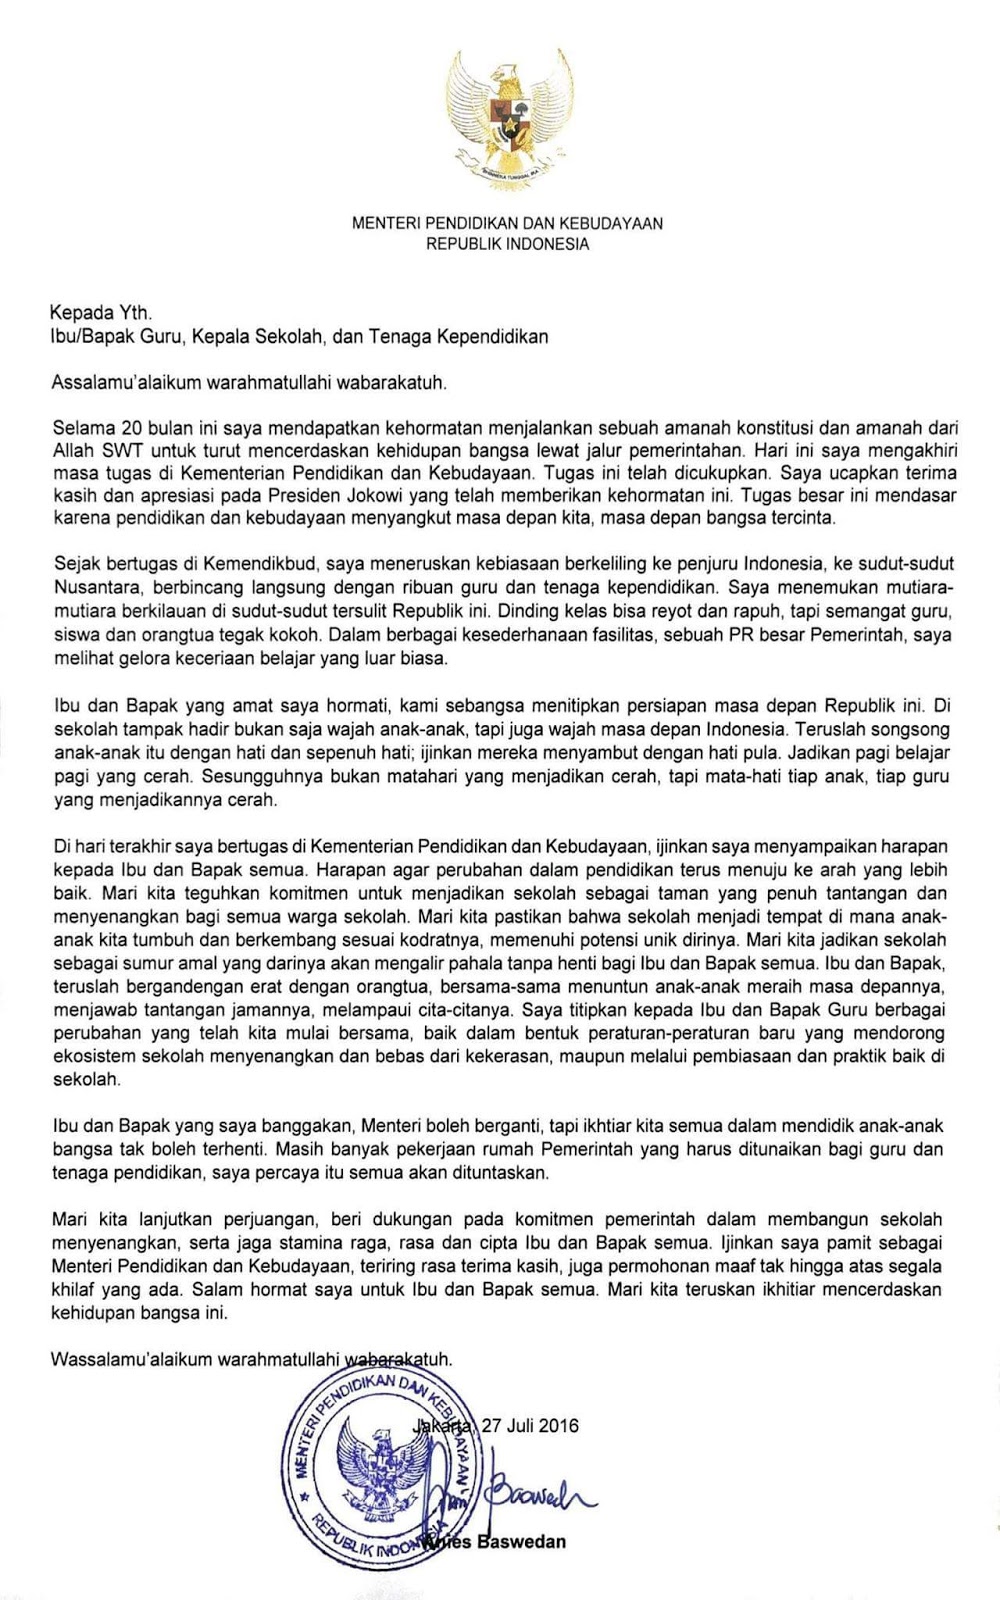 Inilah Surat Perpisahan Resmi Menteri Anies Baswedan 